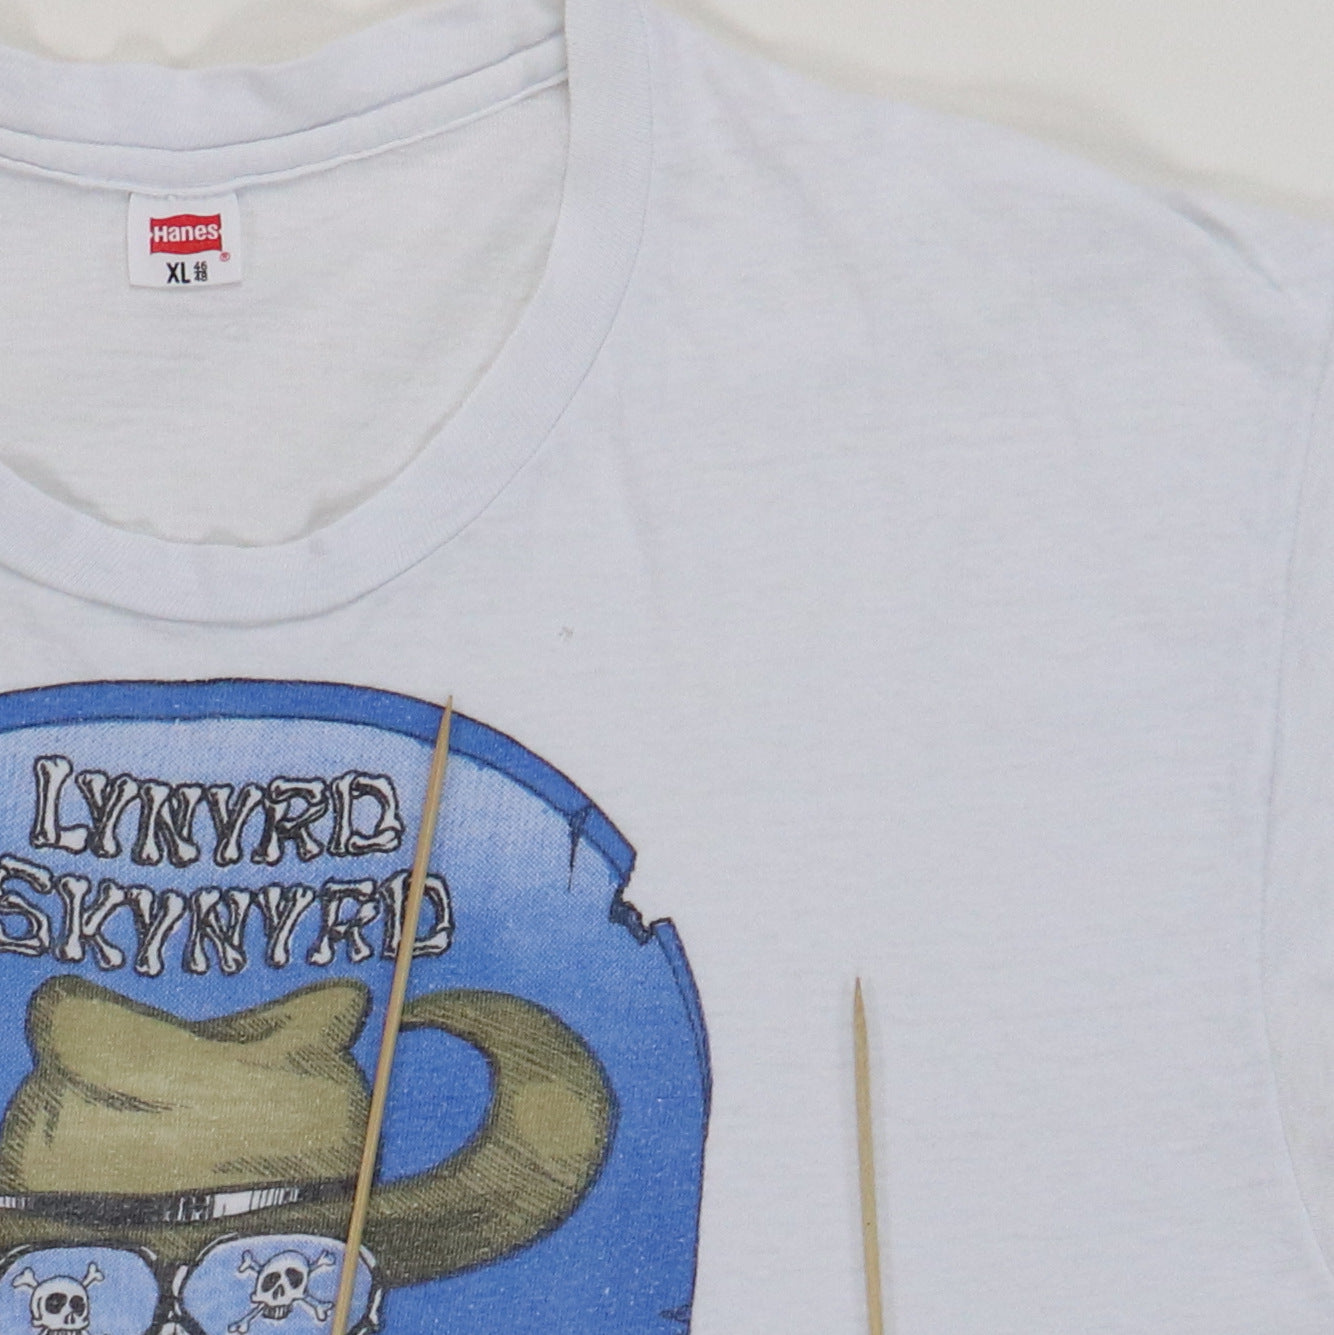 1970s Lynyrd Skynyrd Shirt